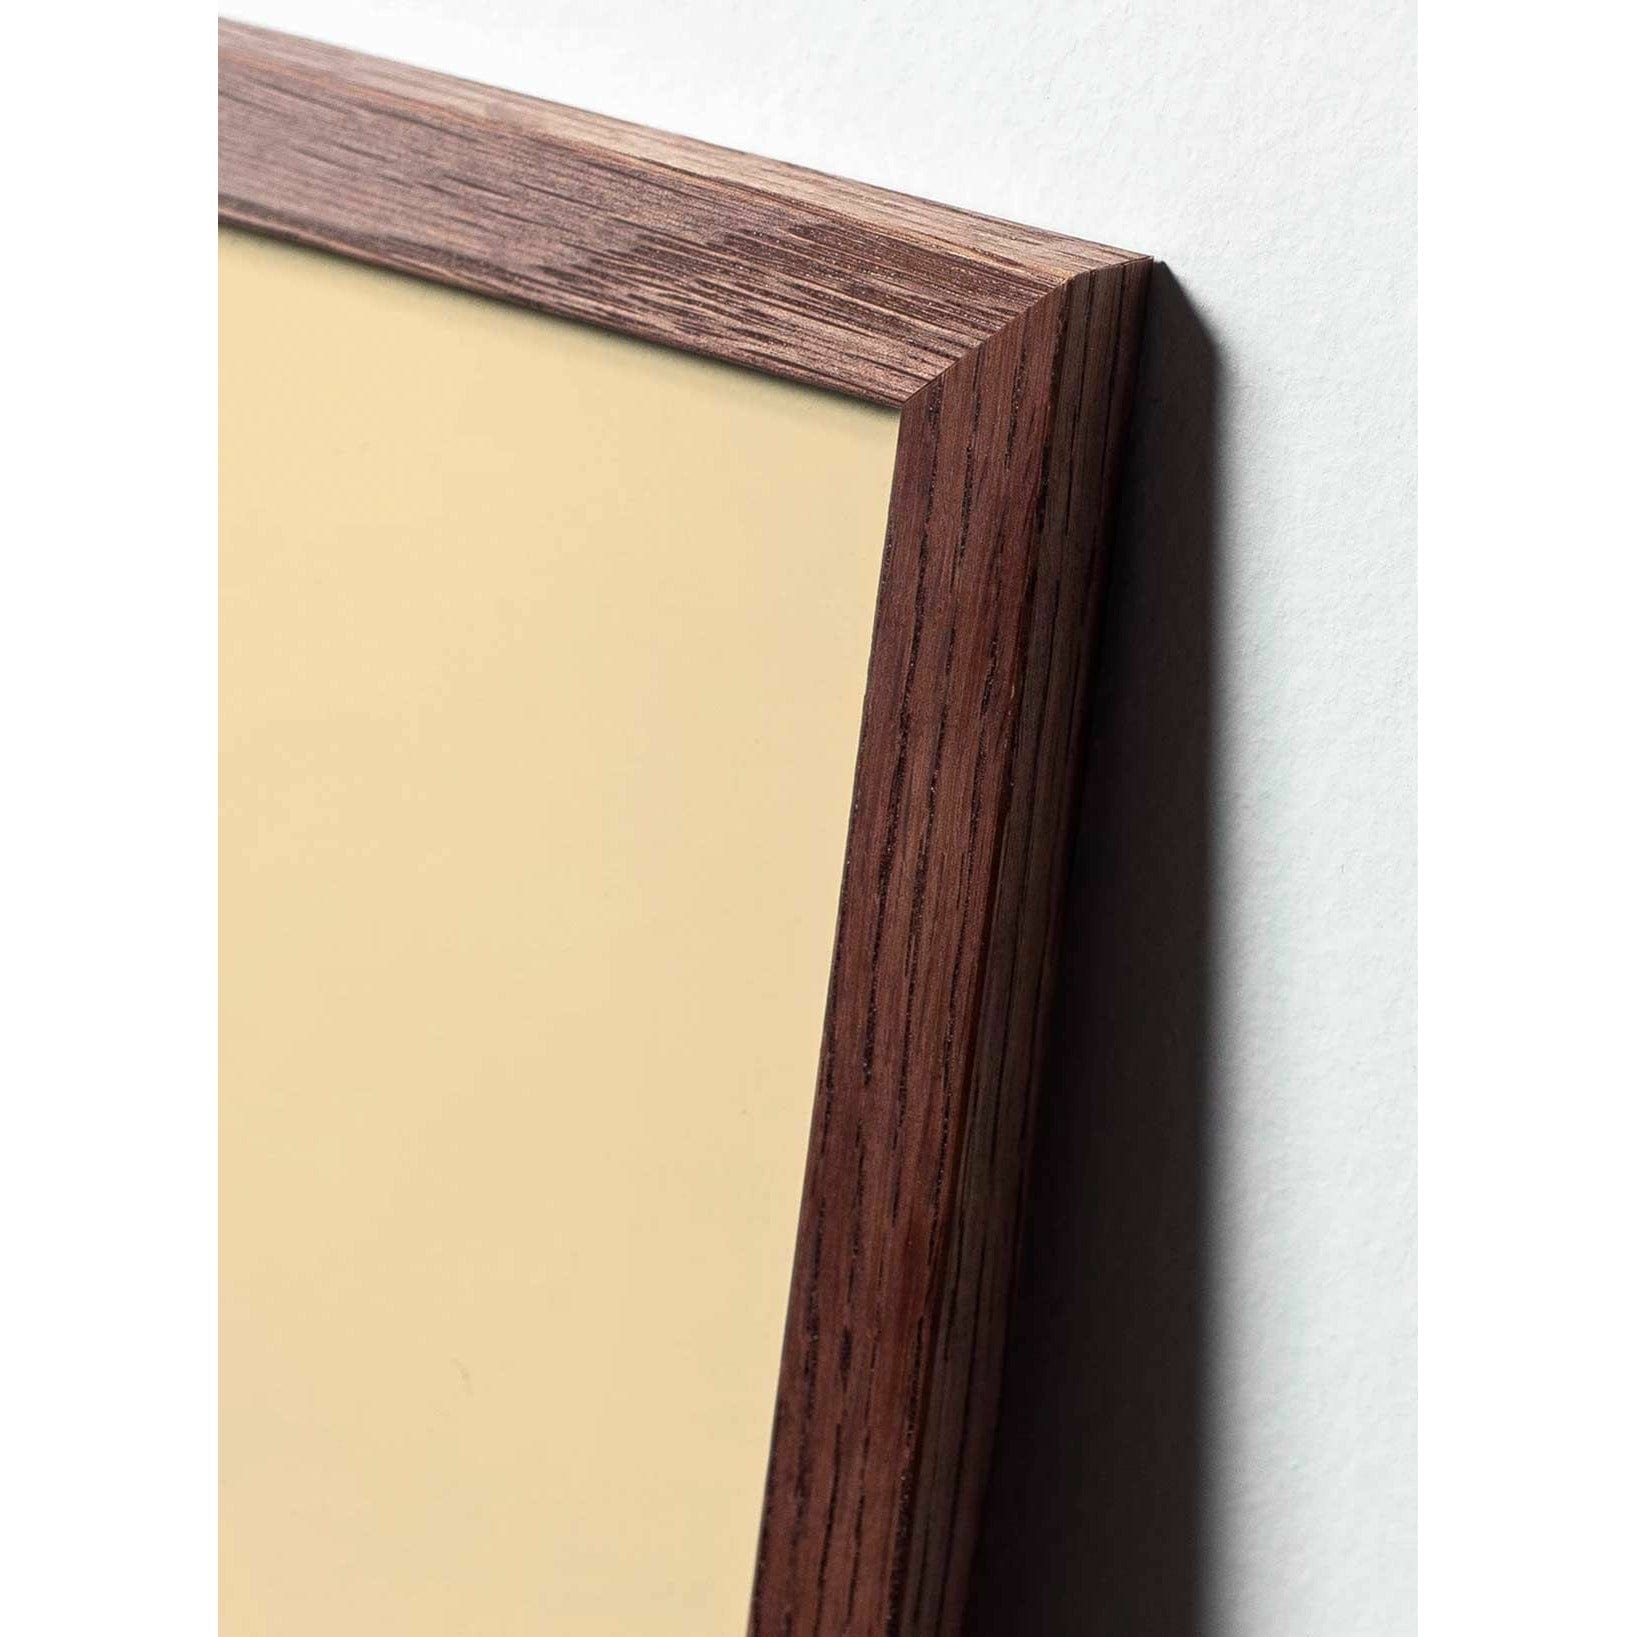 Póster clásico de cono de pino de creación, marco de madera oscura A5, fondo negro